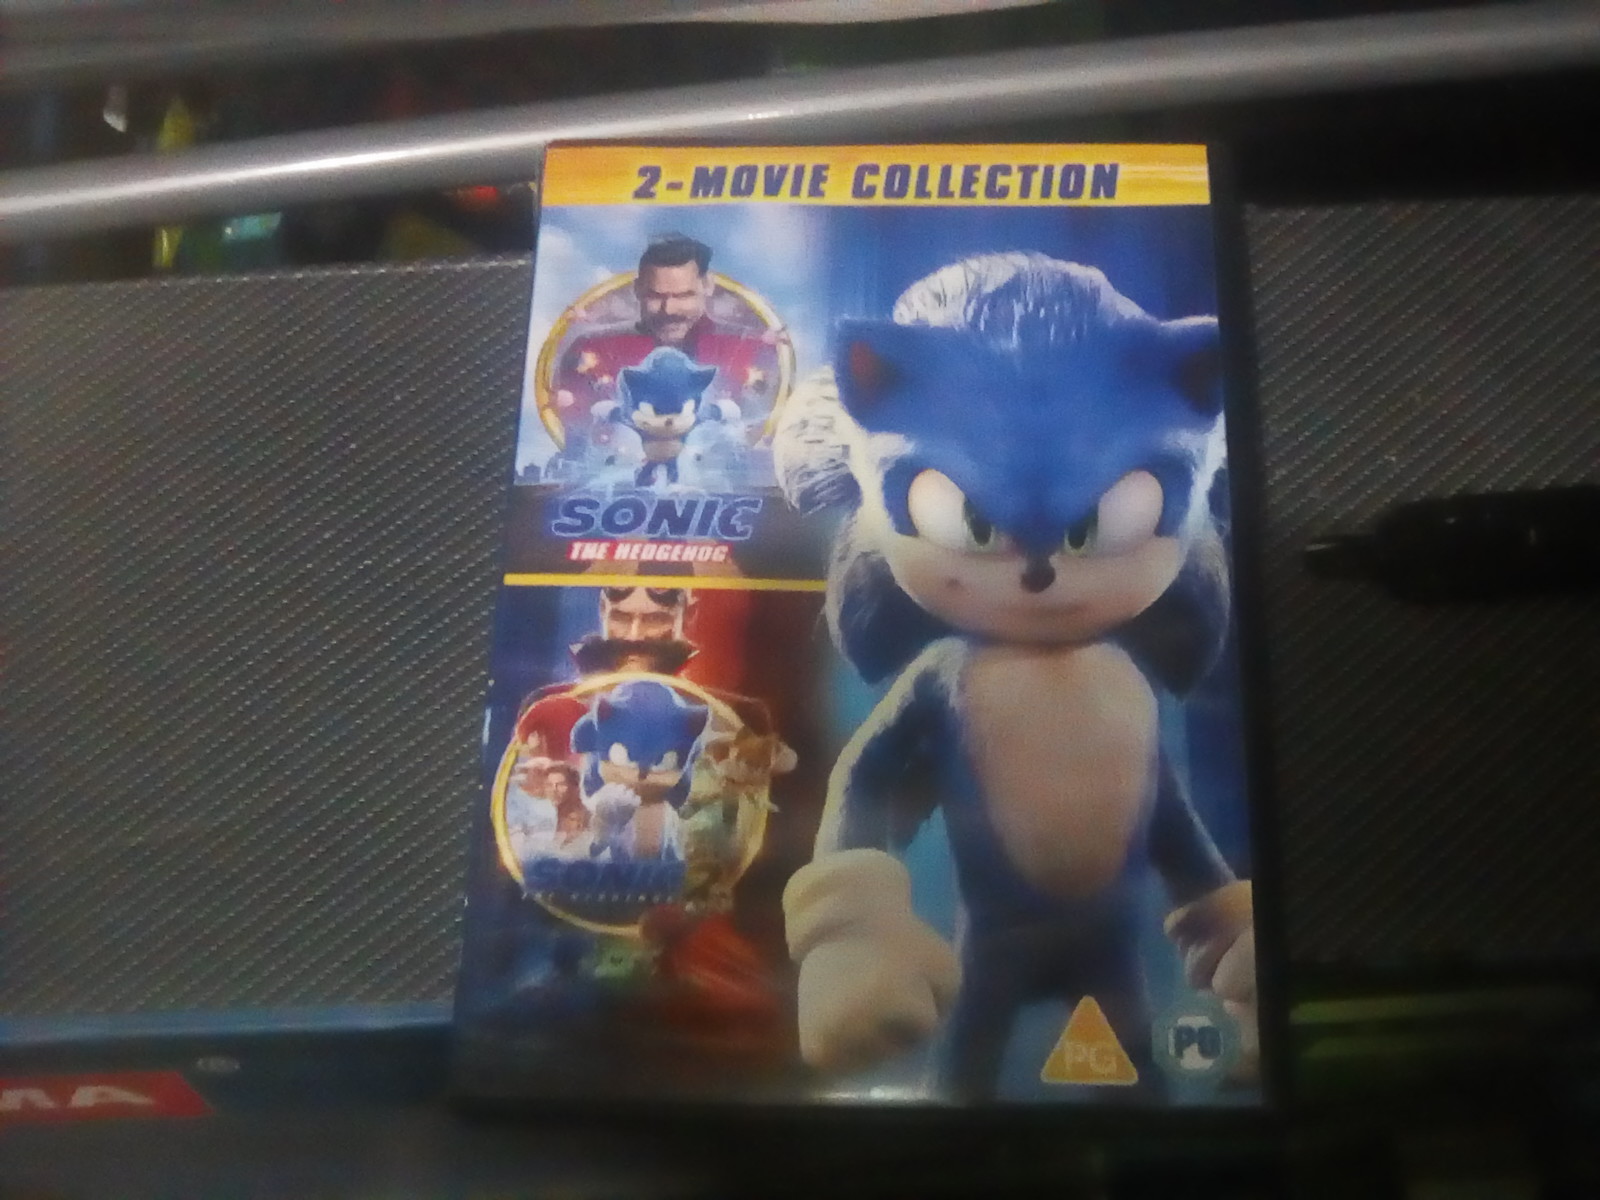 DVD Sonic 2: O Filme